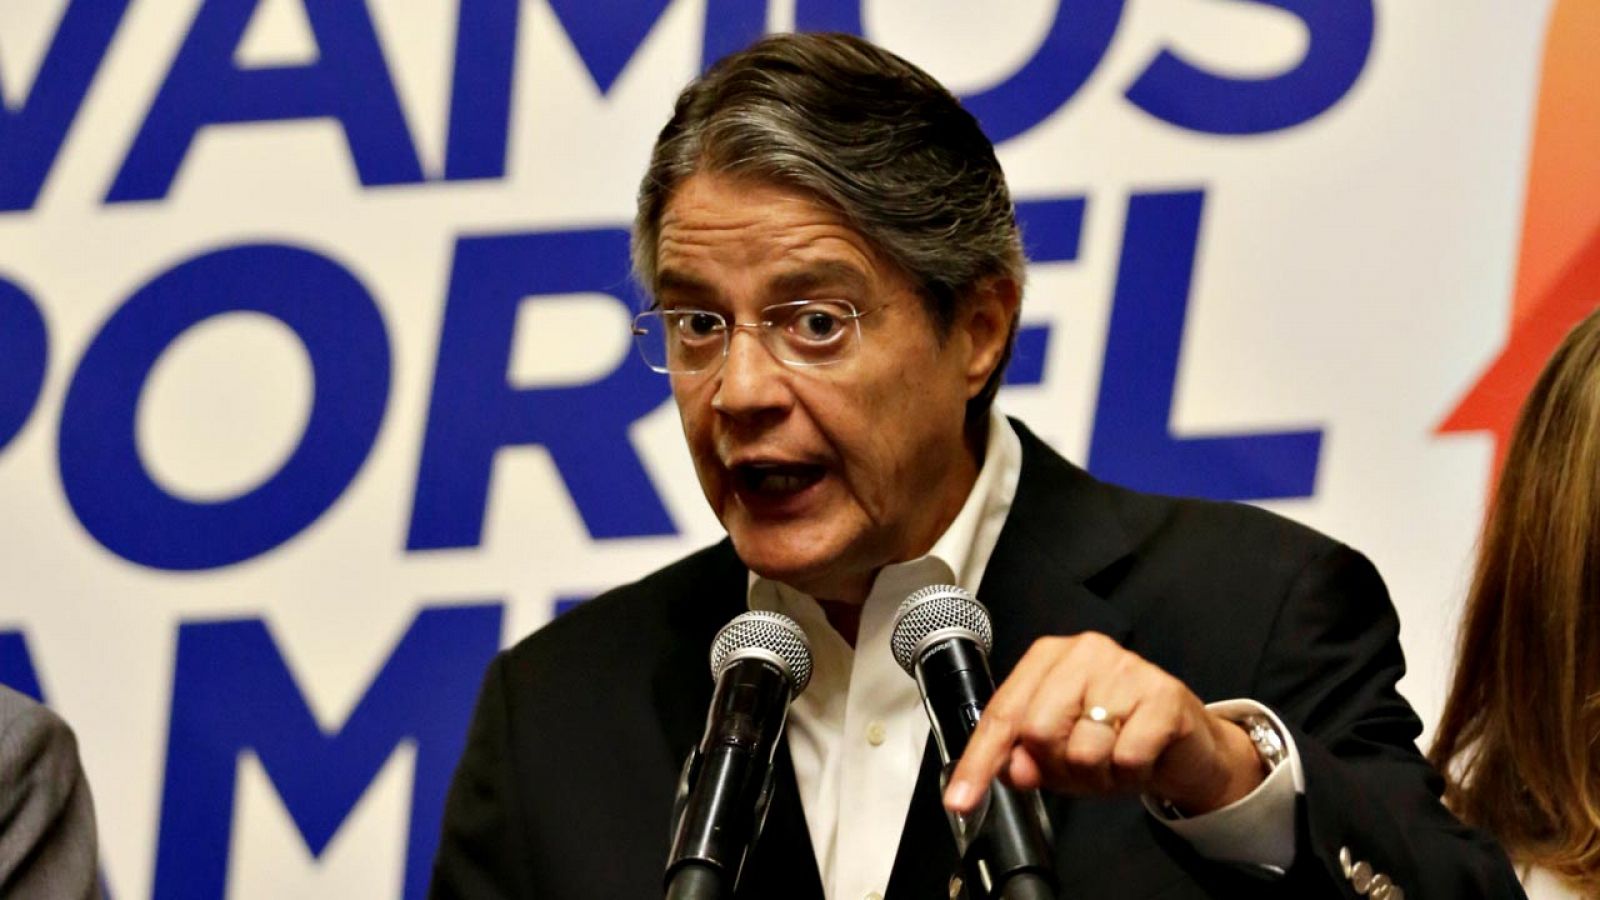 El candidato opositor de las elecciones presidenciales ecuatorianas, Guillermo Lasso